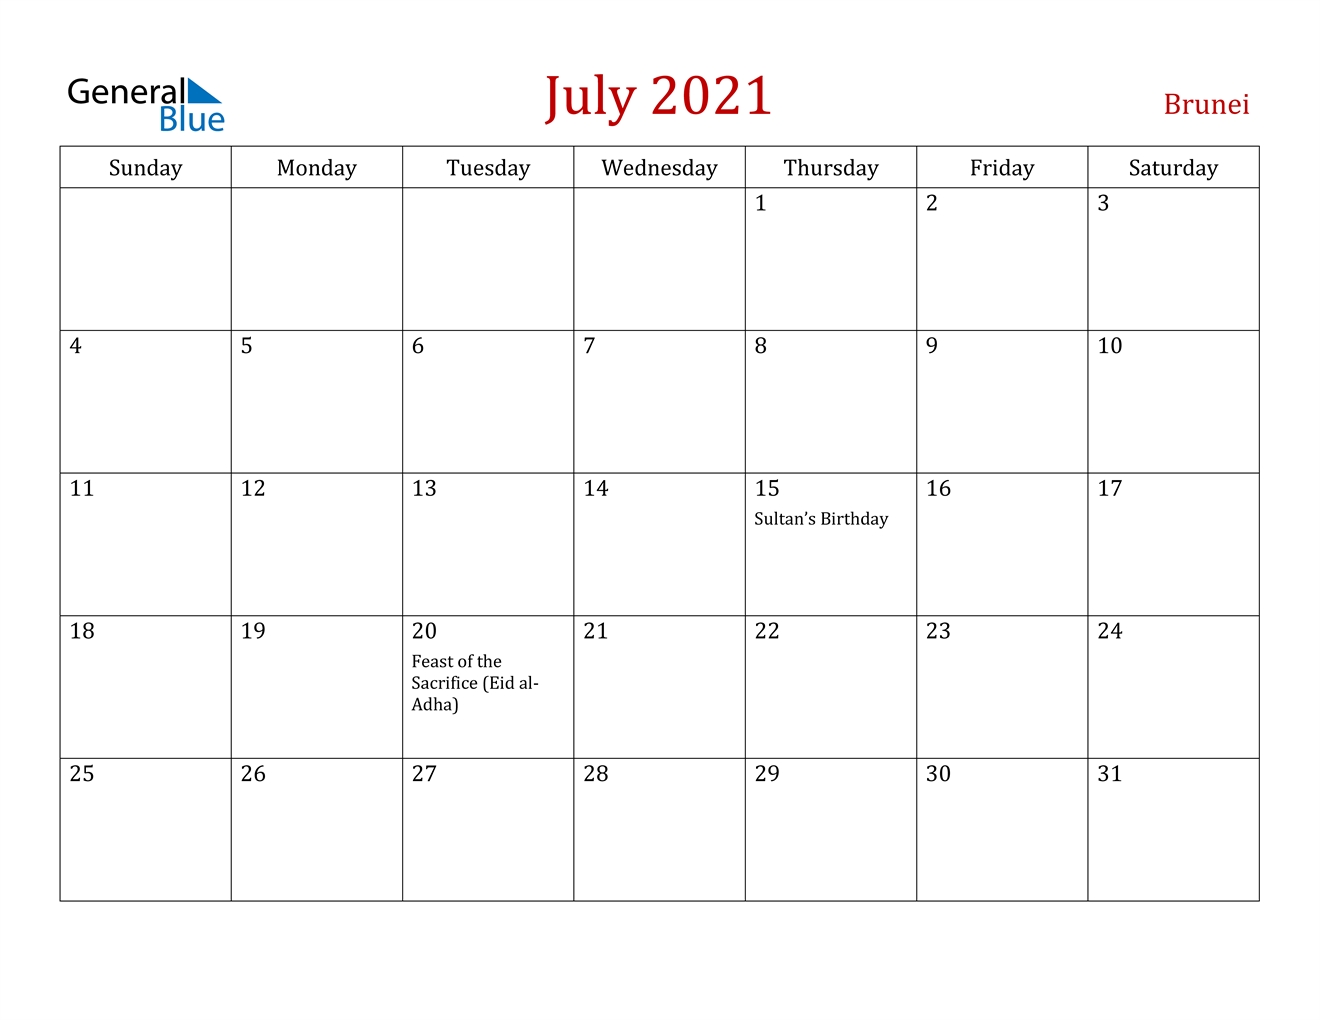 July 2021 Calendar - Brunei July 2021 Calendar Holidays